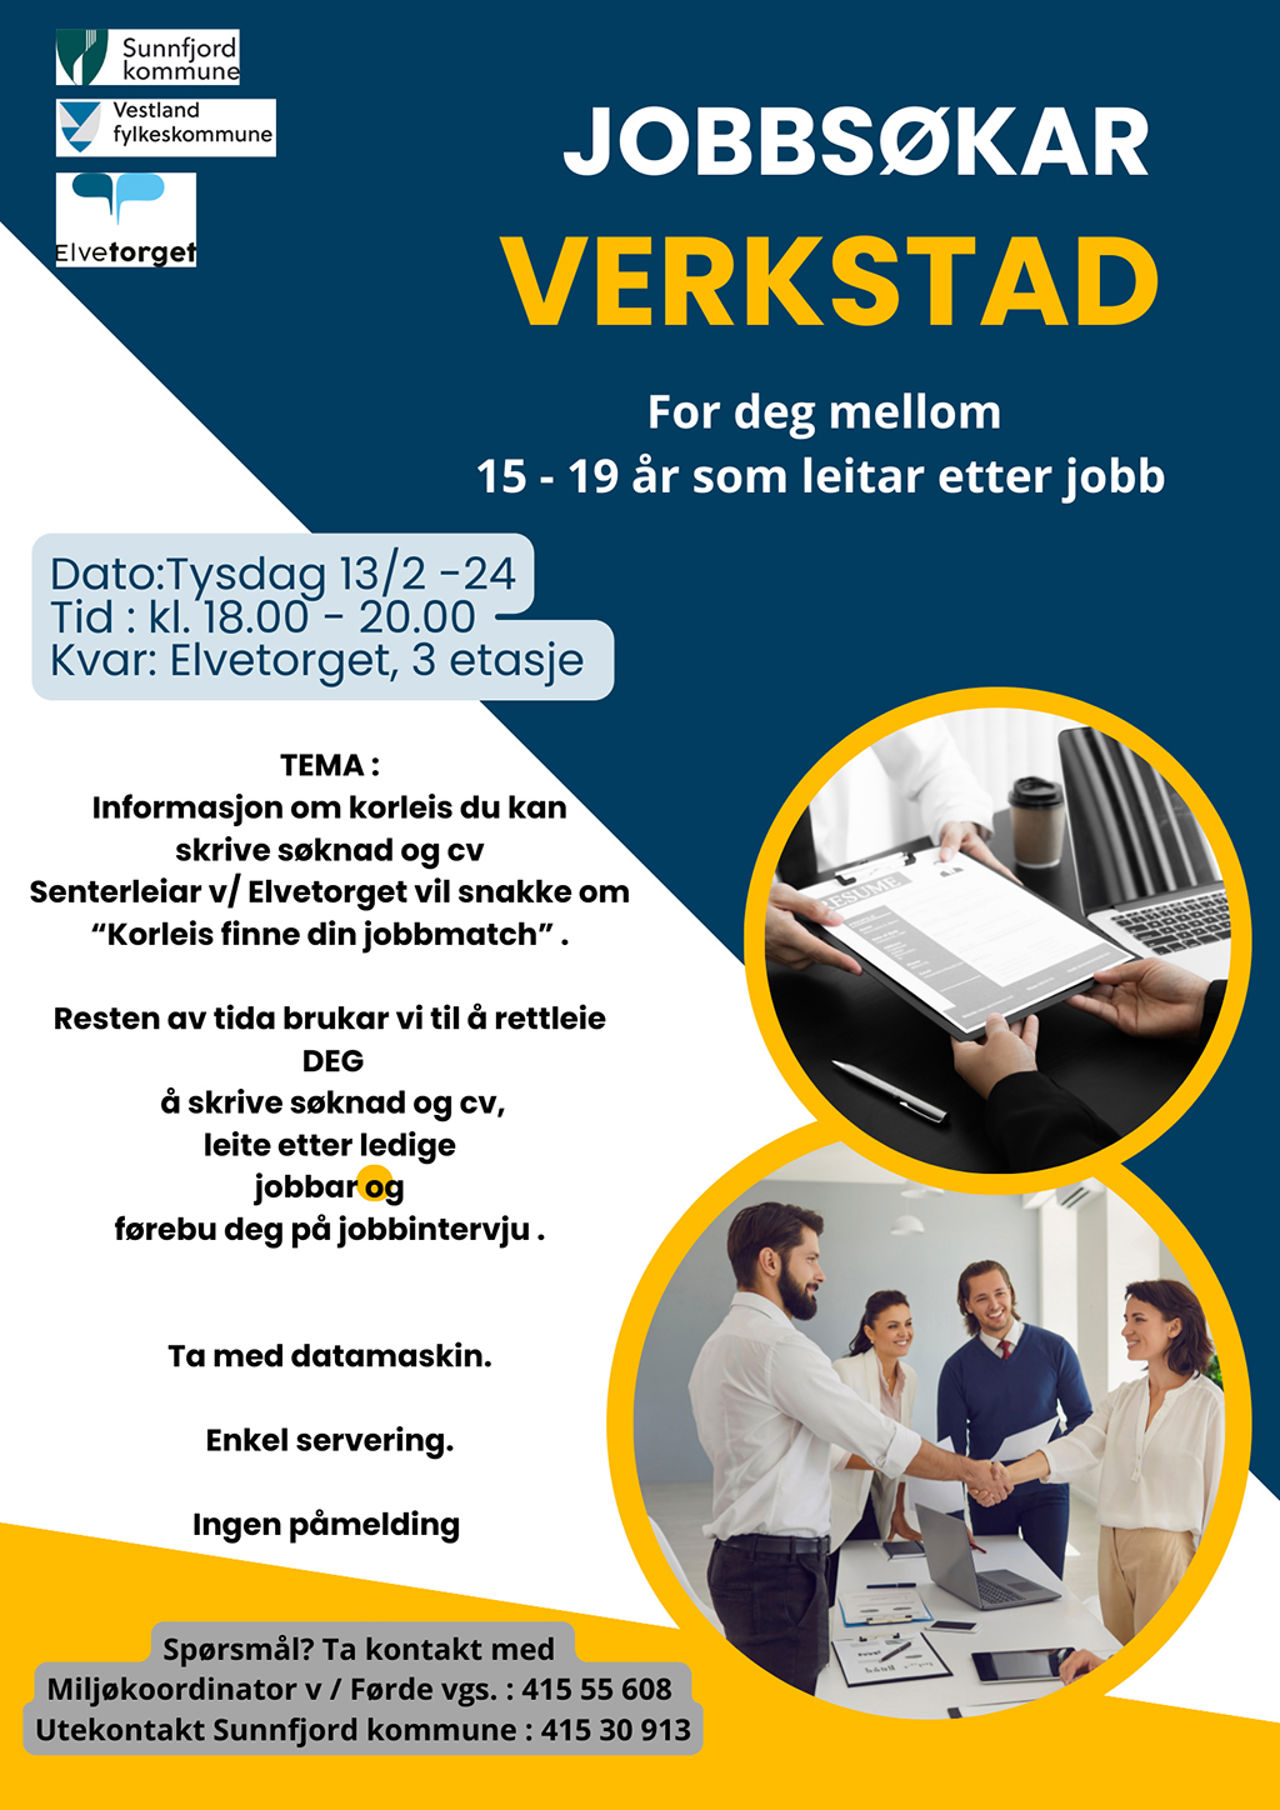 Jobbsøkarverkstad (plakat).jpg